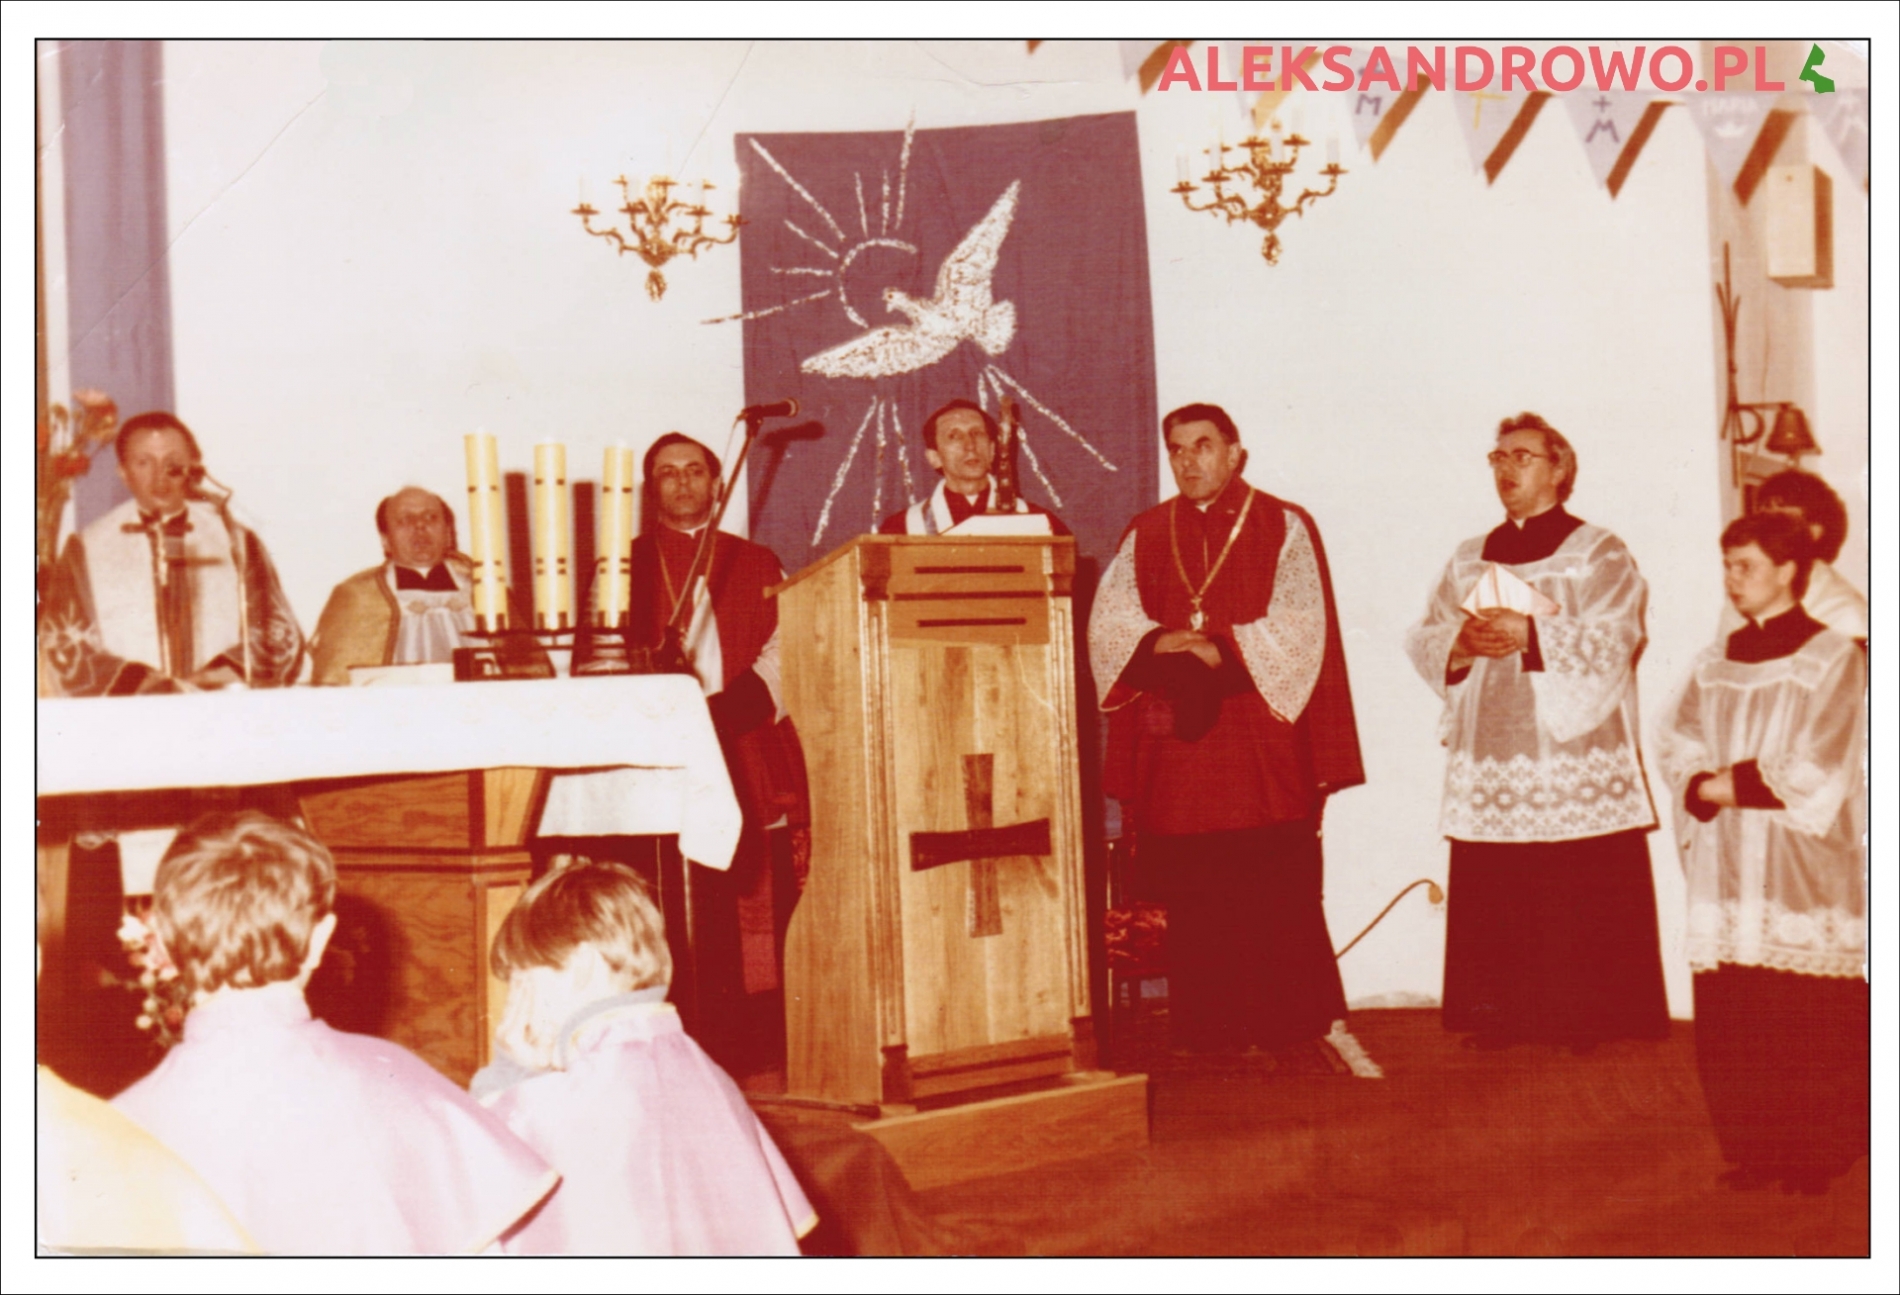 Nawiedzenie obrazu Matki Boskiej 1986